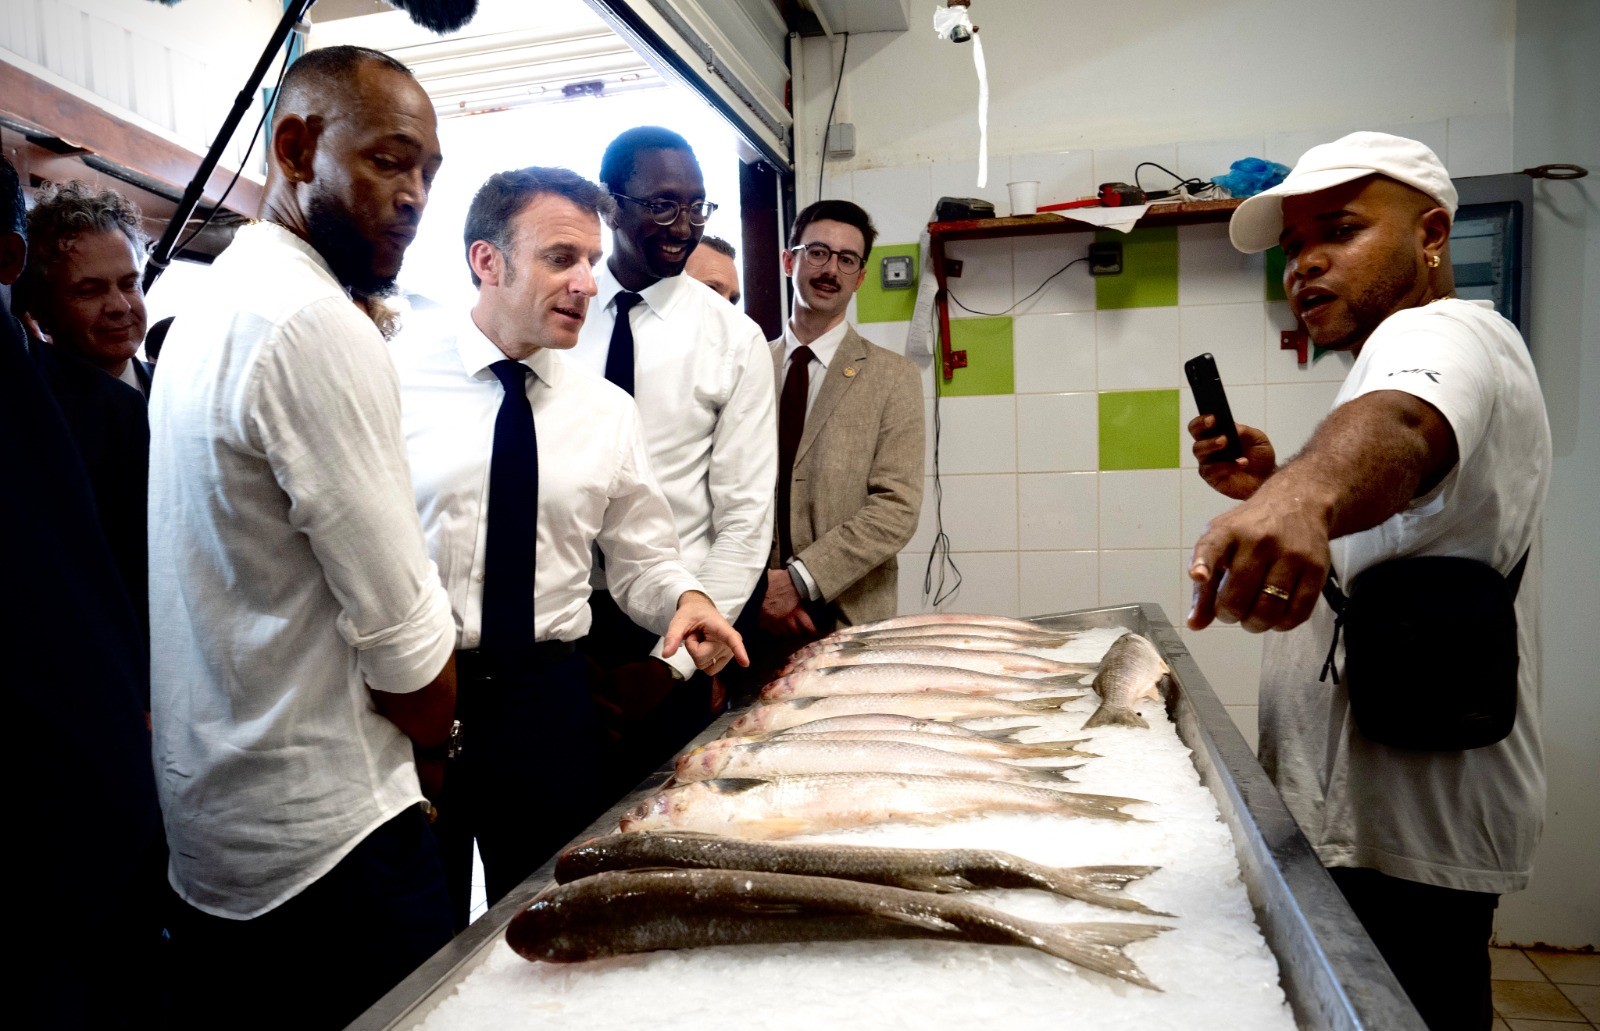     Les premières annonces d’Emmanuel Macron sur la pêche en Guyane

